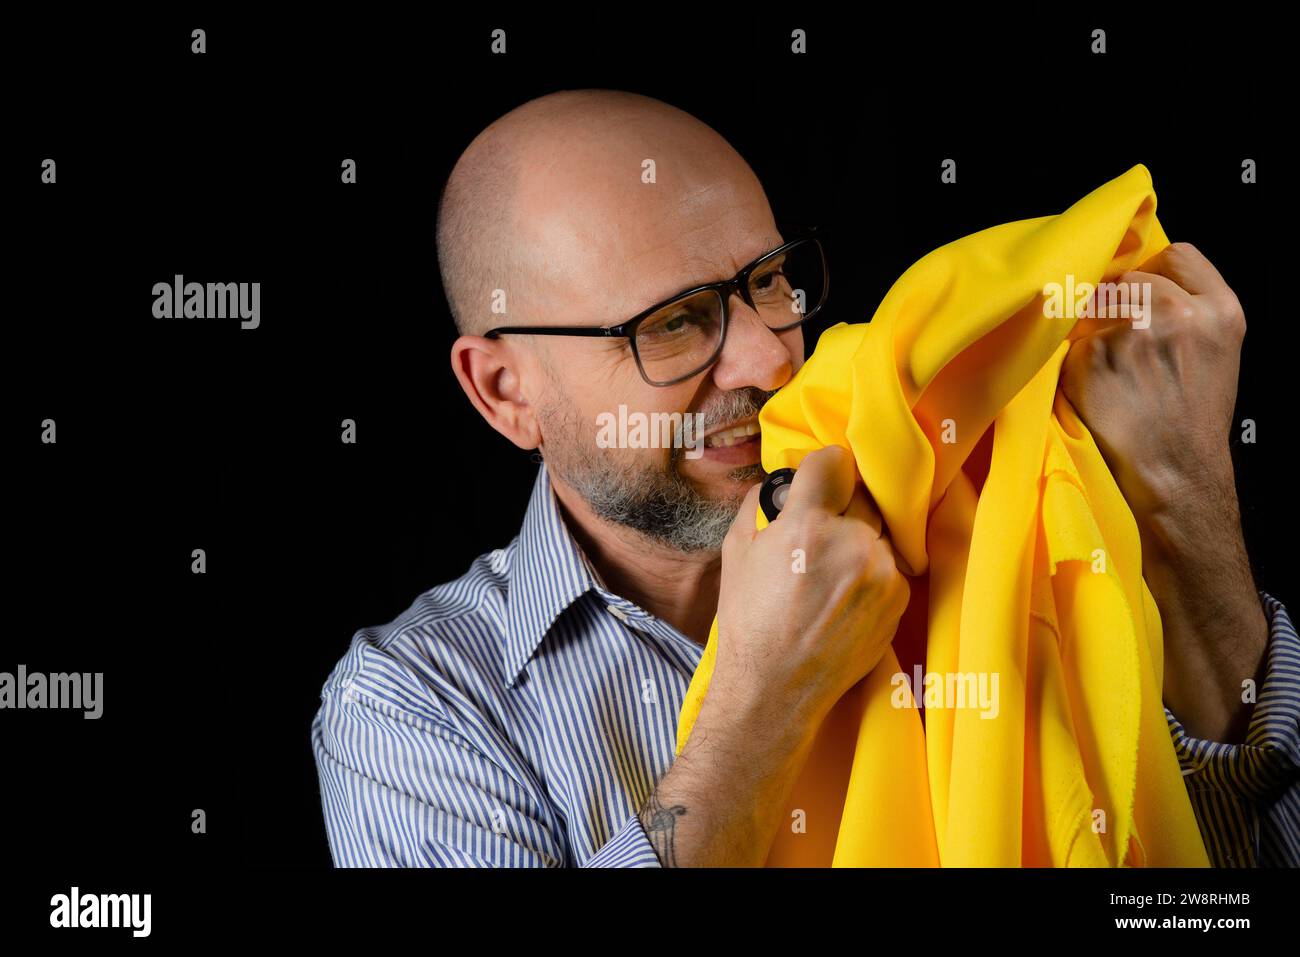 Homme chauve, barbu avec des lunettes tenant un tissu de couleur jaune au-dessus de sa tête sur fond noir. Banque D'Images